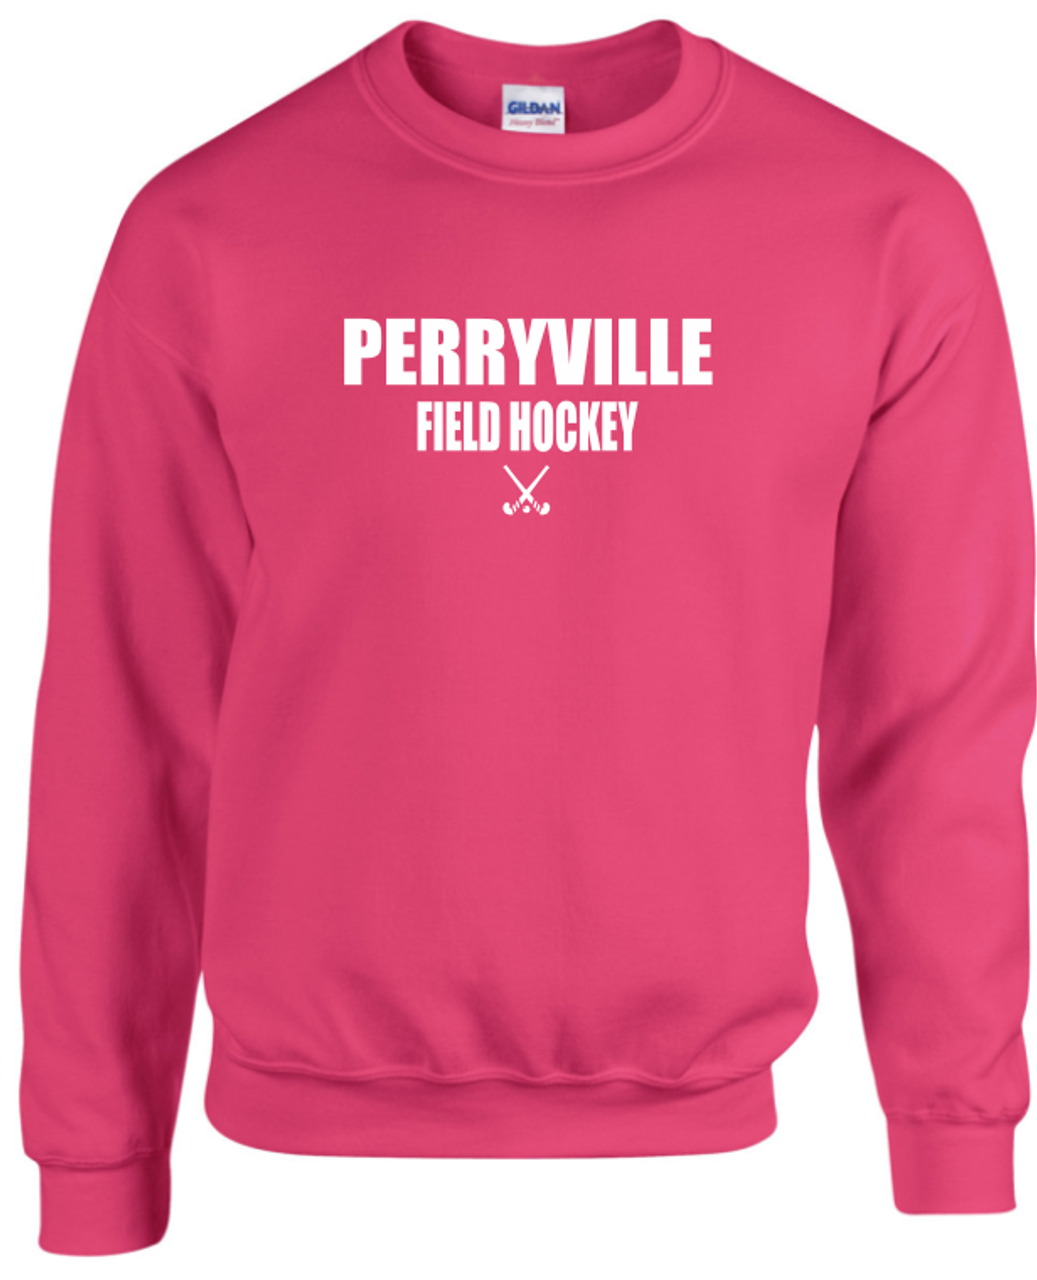 Perryville Field Hockey Crewneck, Dark Pink